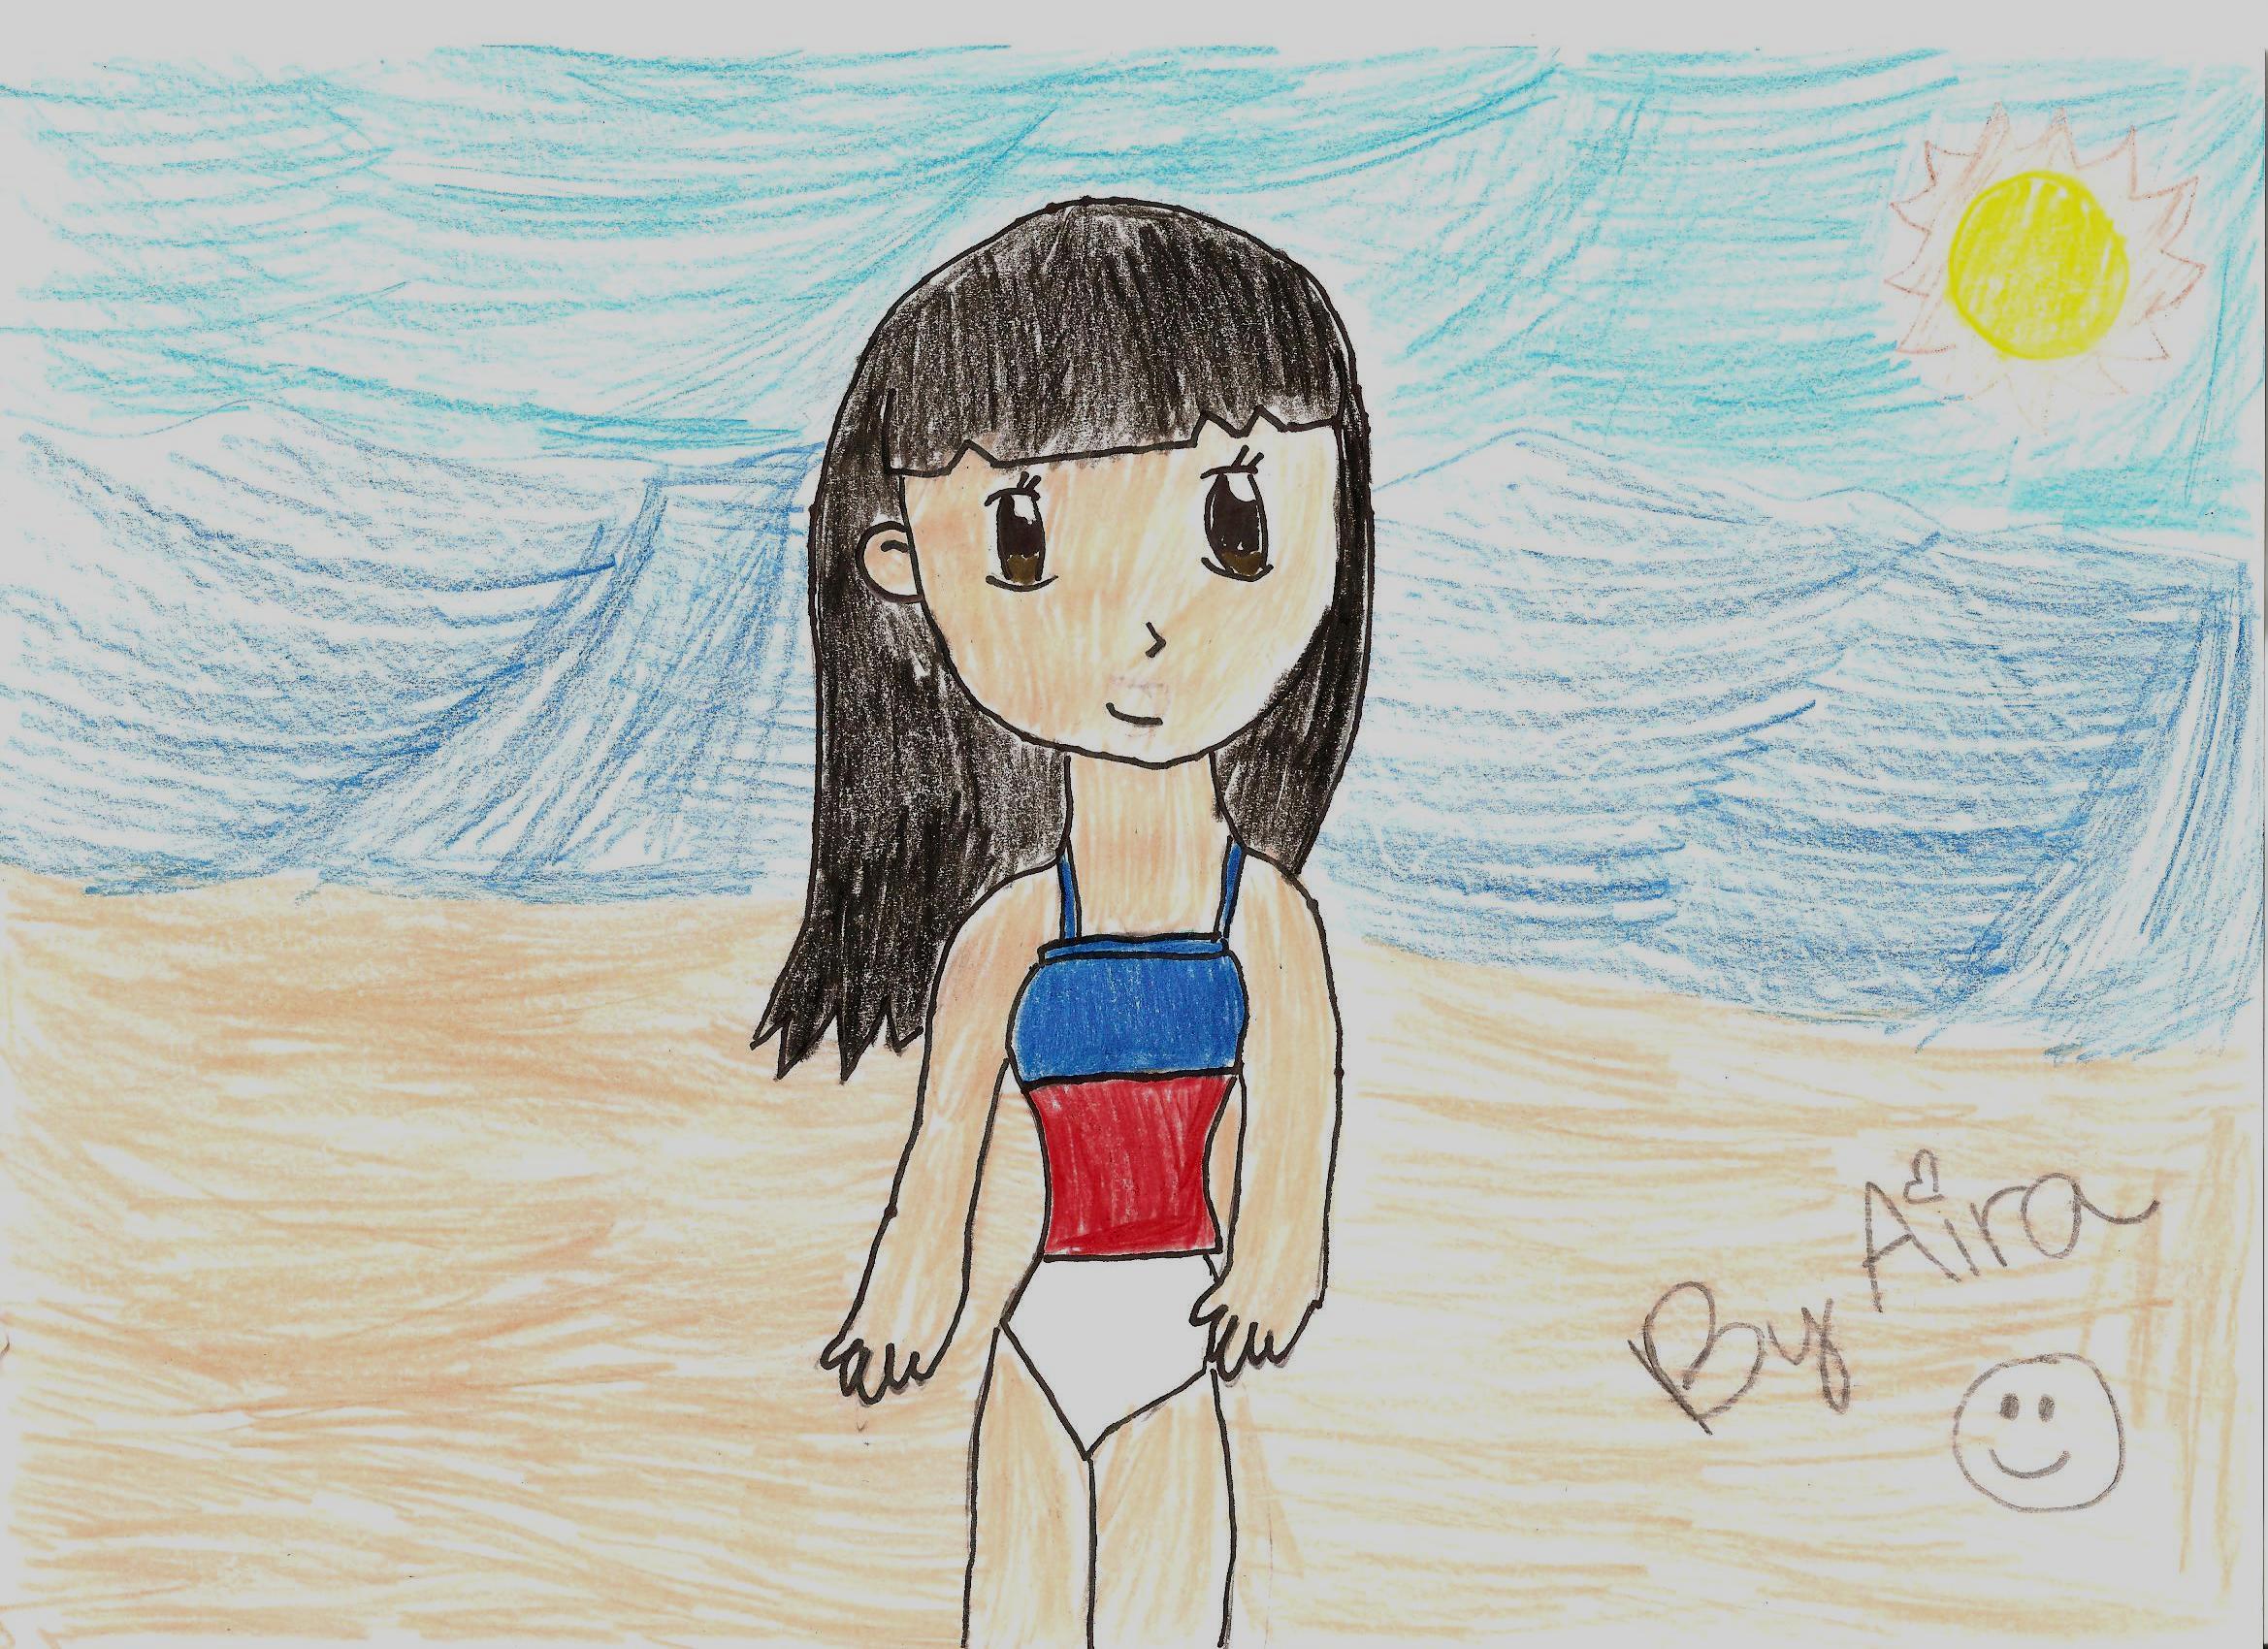 Anime Girl On The Beach